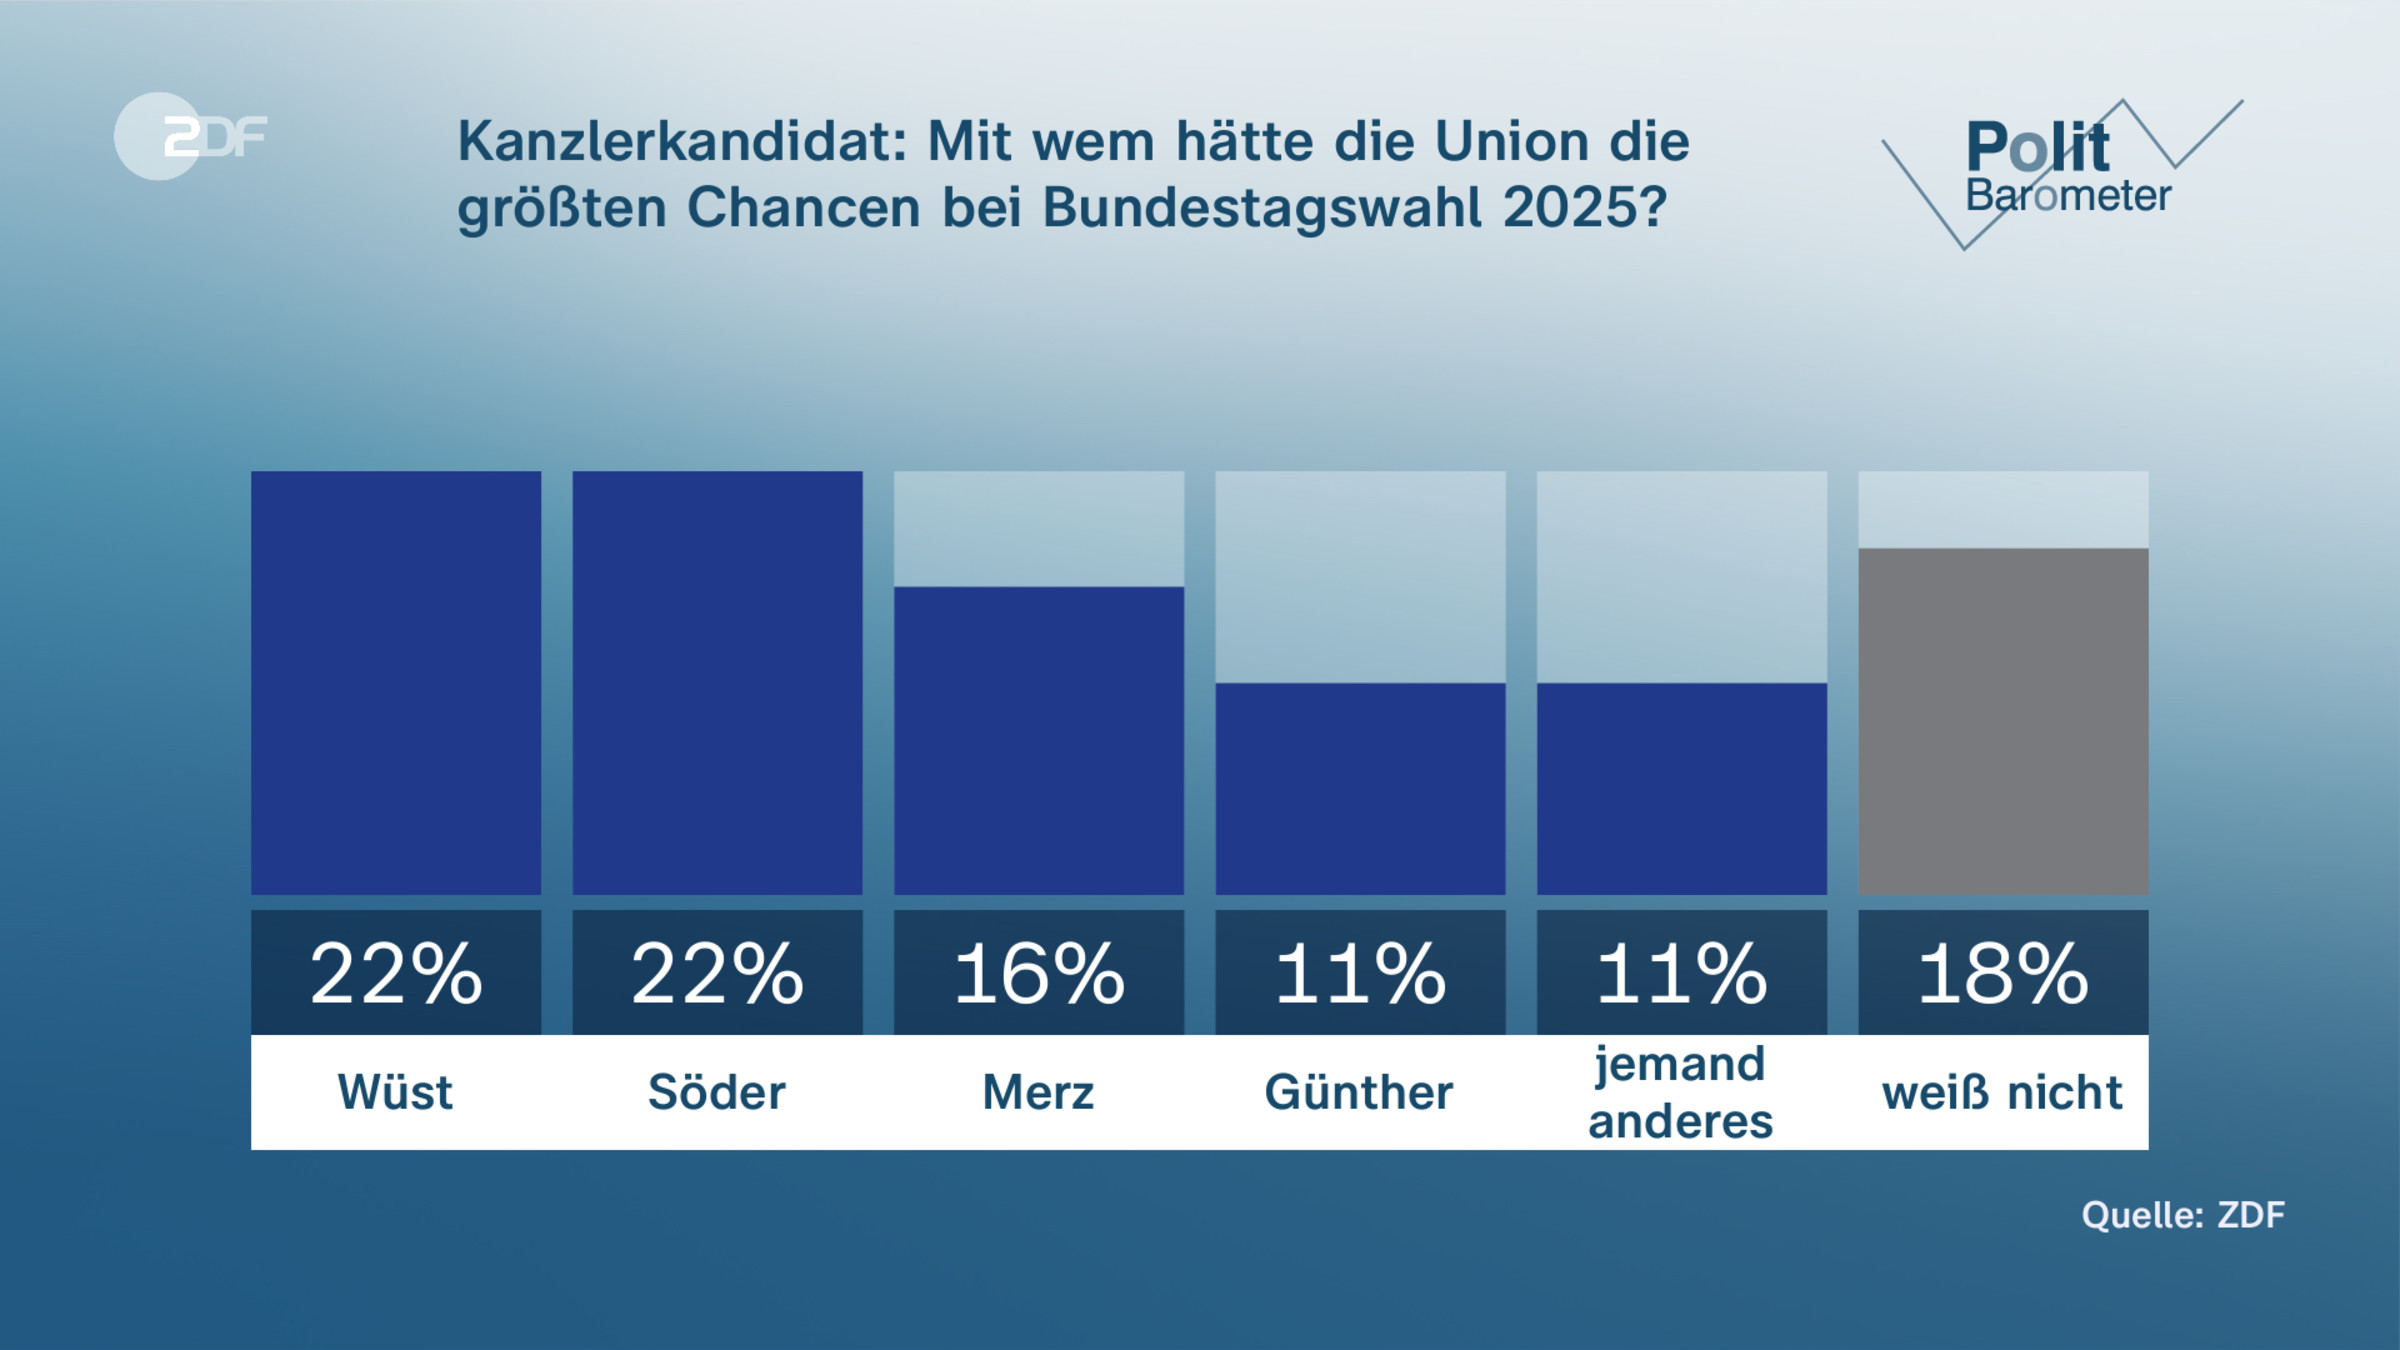 Kanzlerkandidat: Mit wem hätte die Union die größten Chancen bei Bundestagswahl 2025?